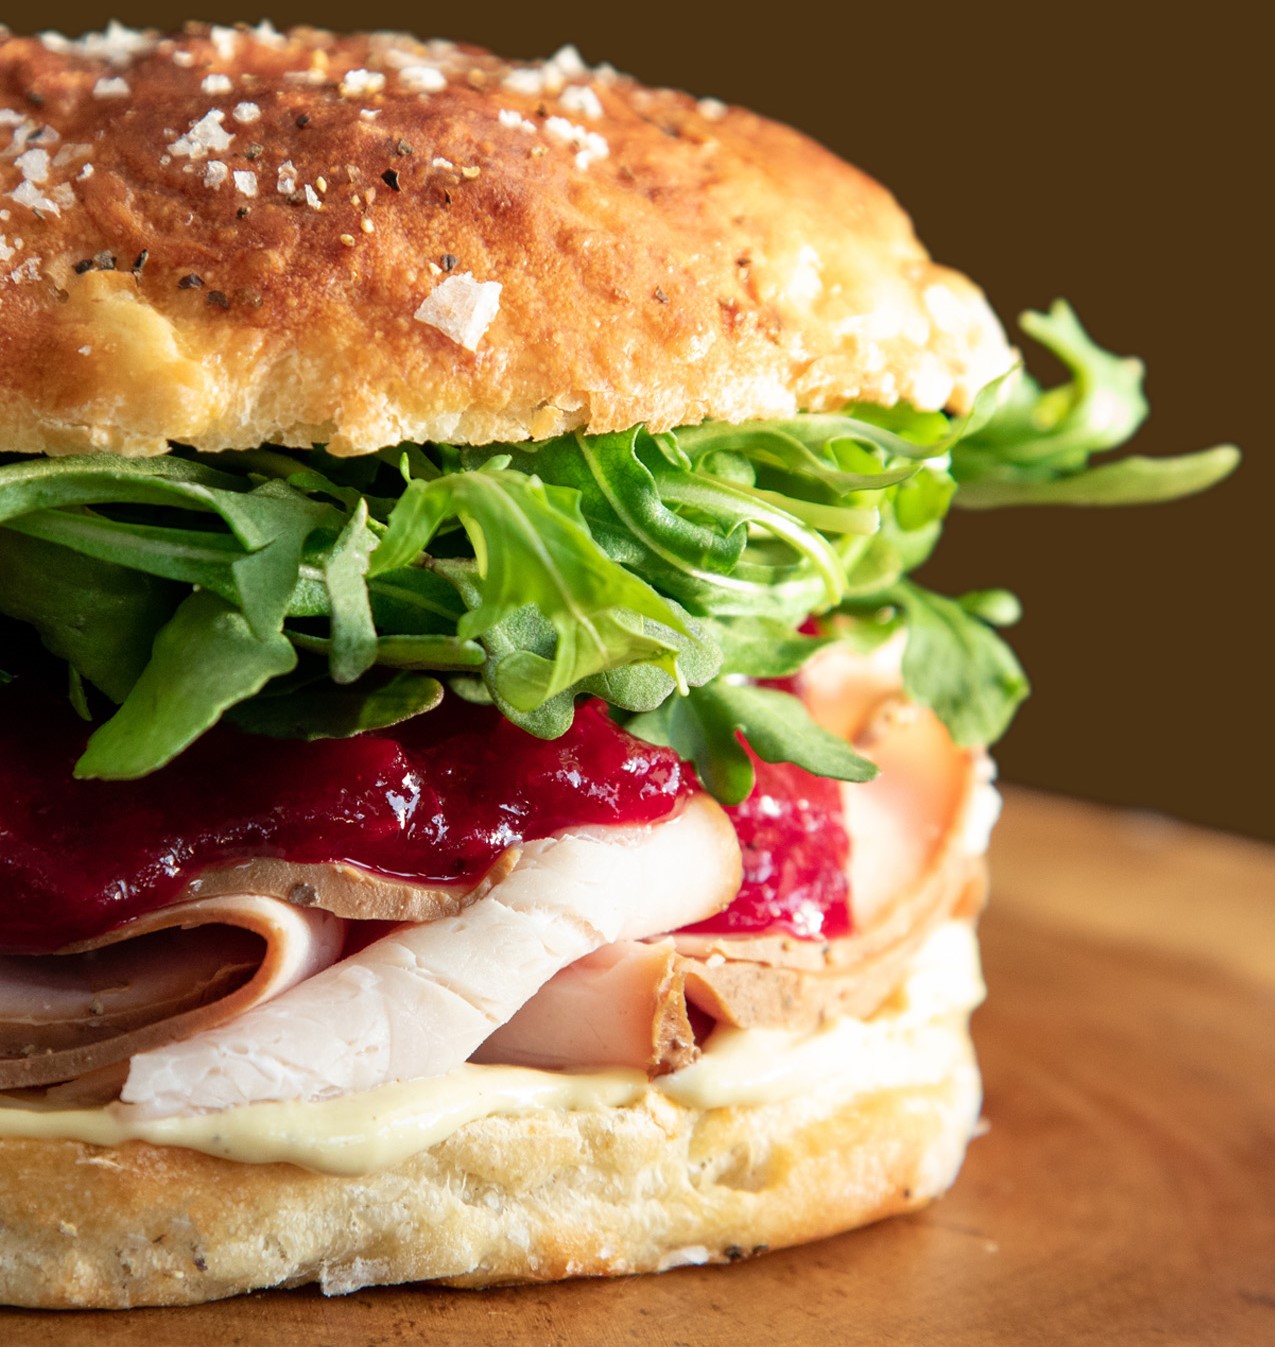 Image of a turkey sandwich